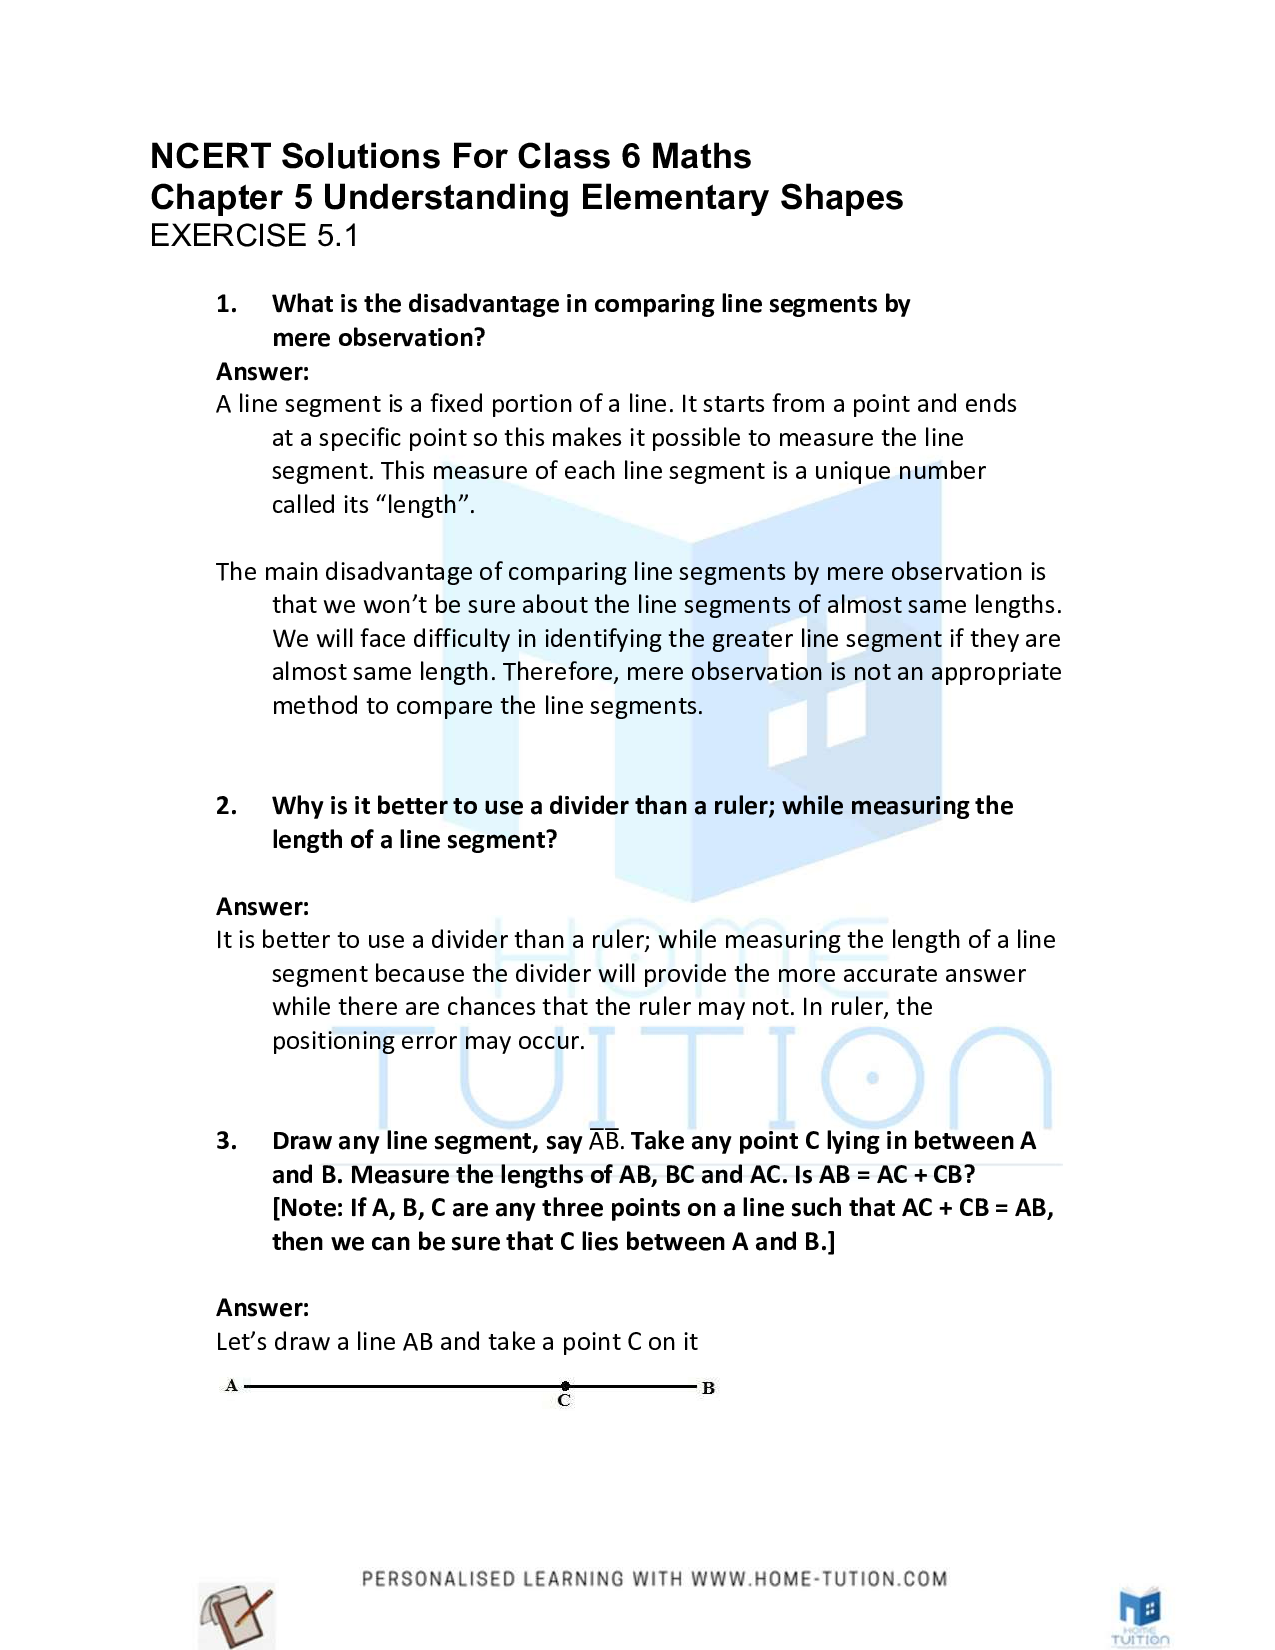 Class 6 Maths Chapter 5 Understanding Elementary Shapes